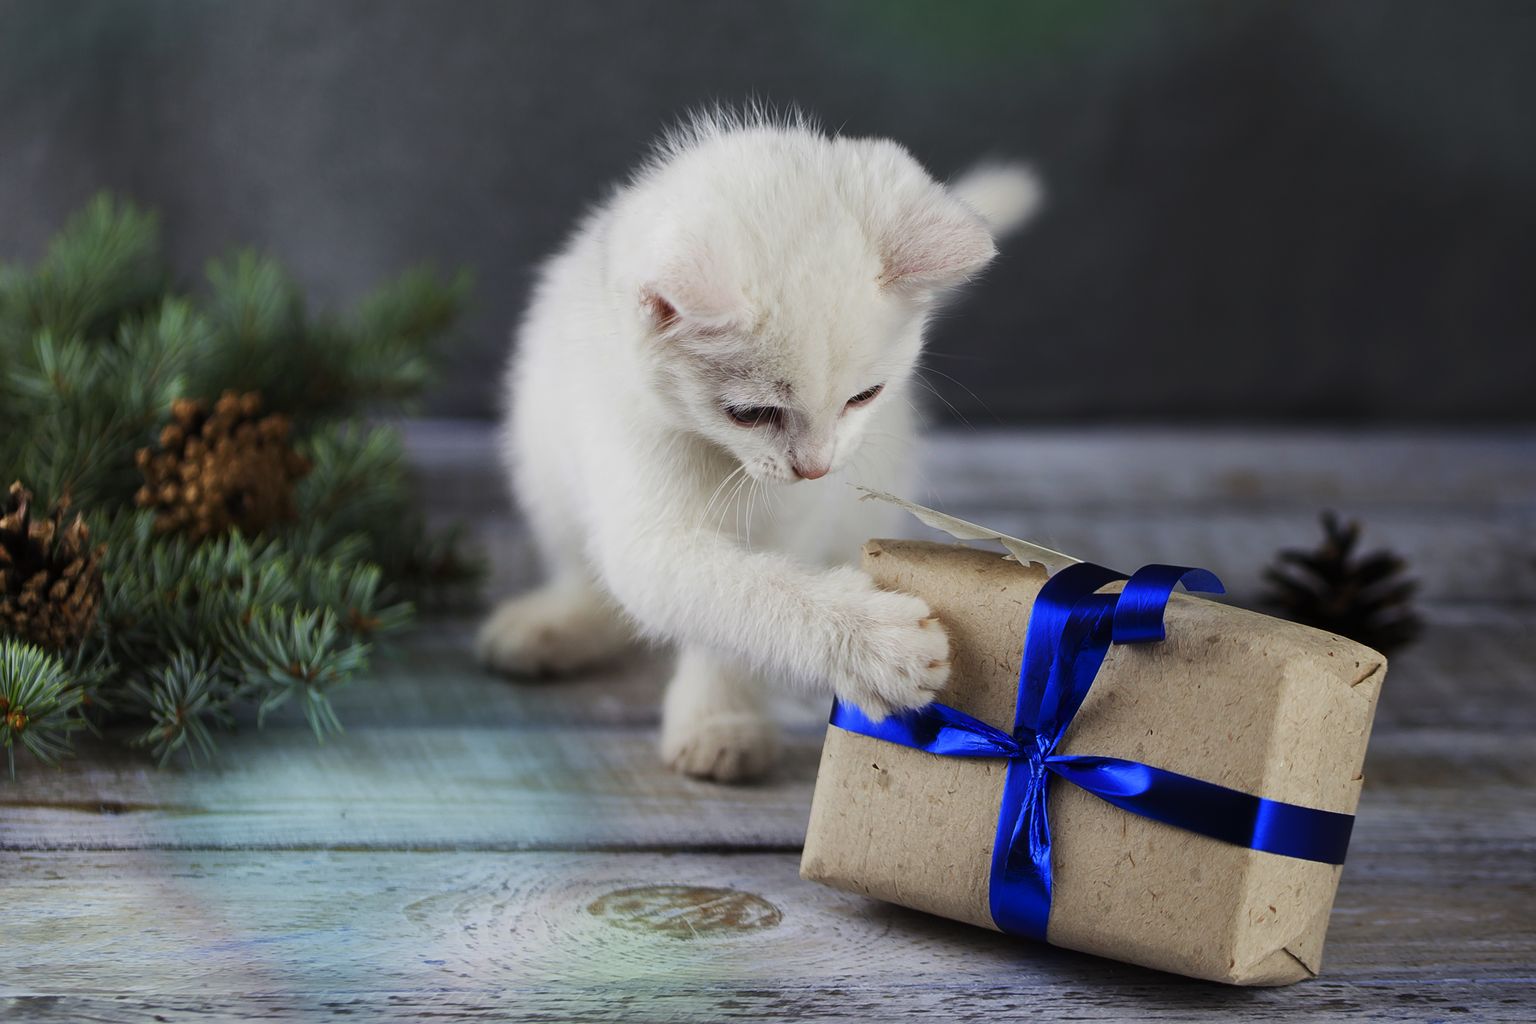 Kui jõulupakkide jagamiseks läheb, on sinu lemmikul kindlasti hea meel, kui ka tema jaoks kotipõhjas midagi head leidub.